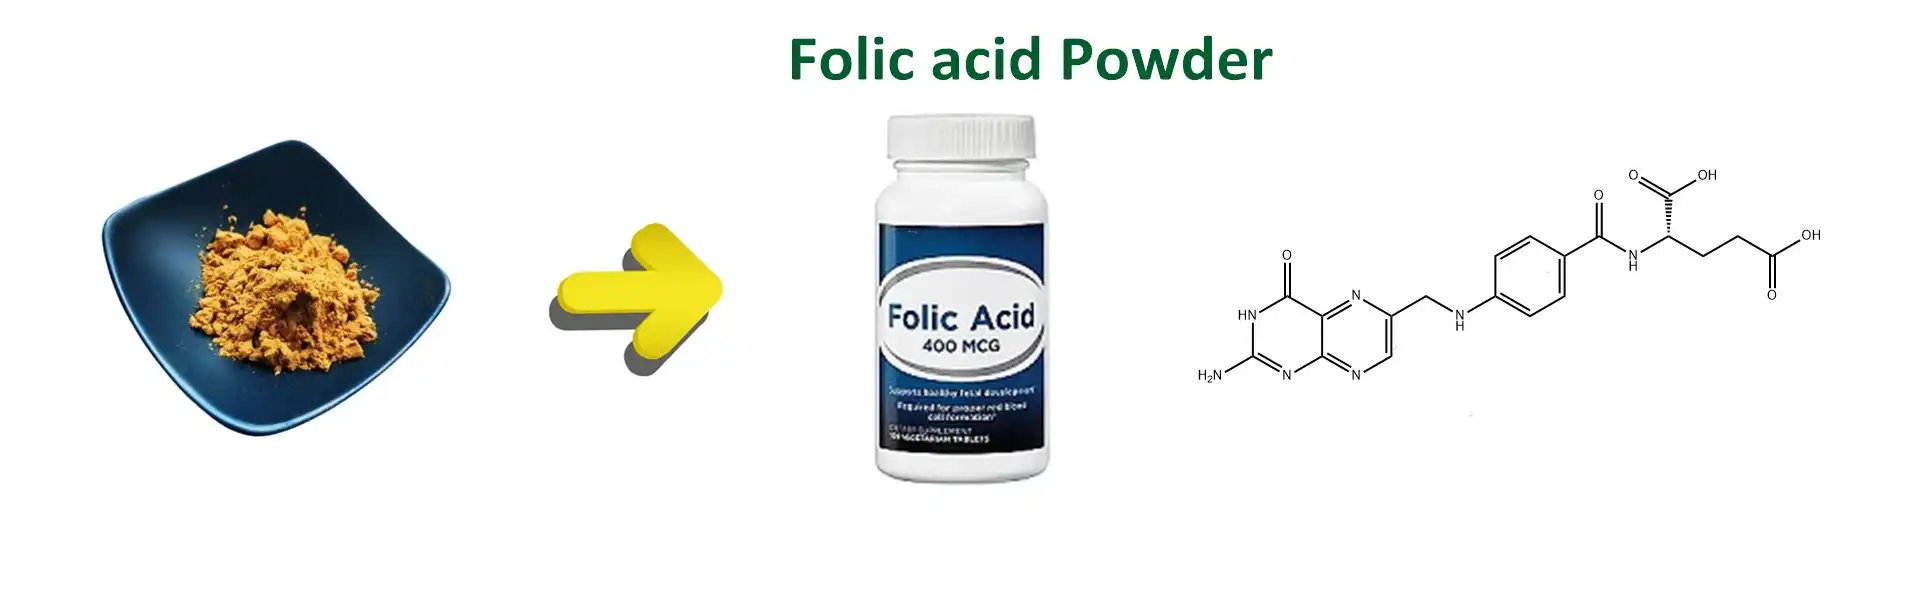 Folic Acid powder